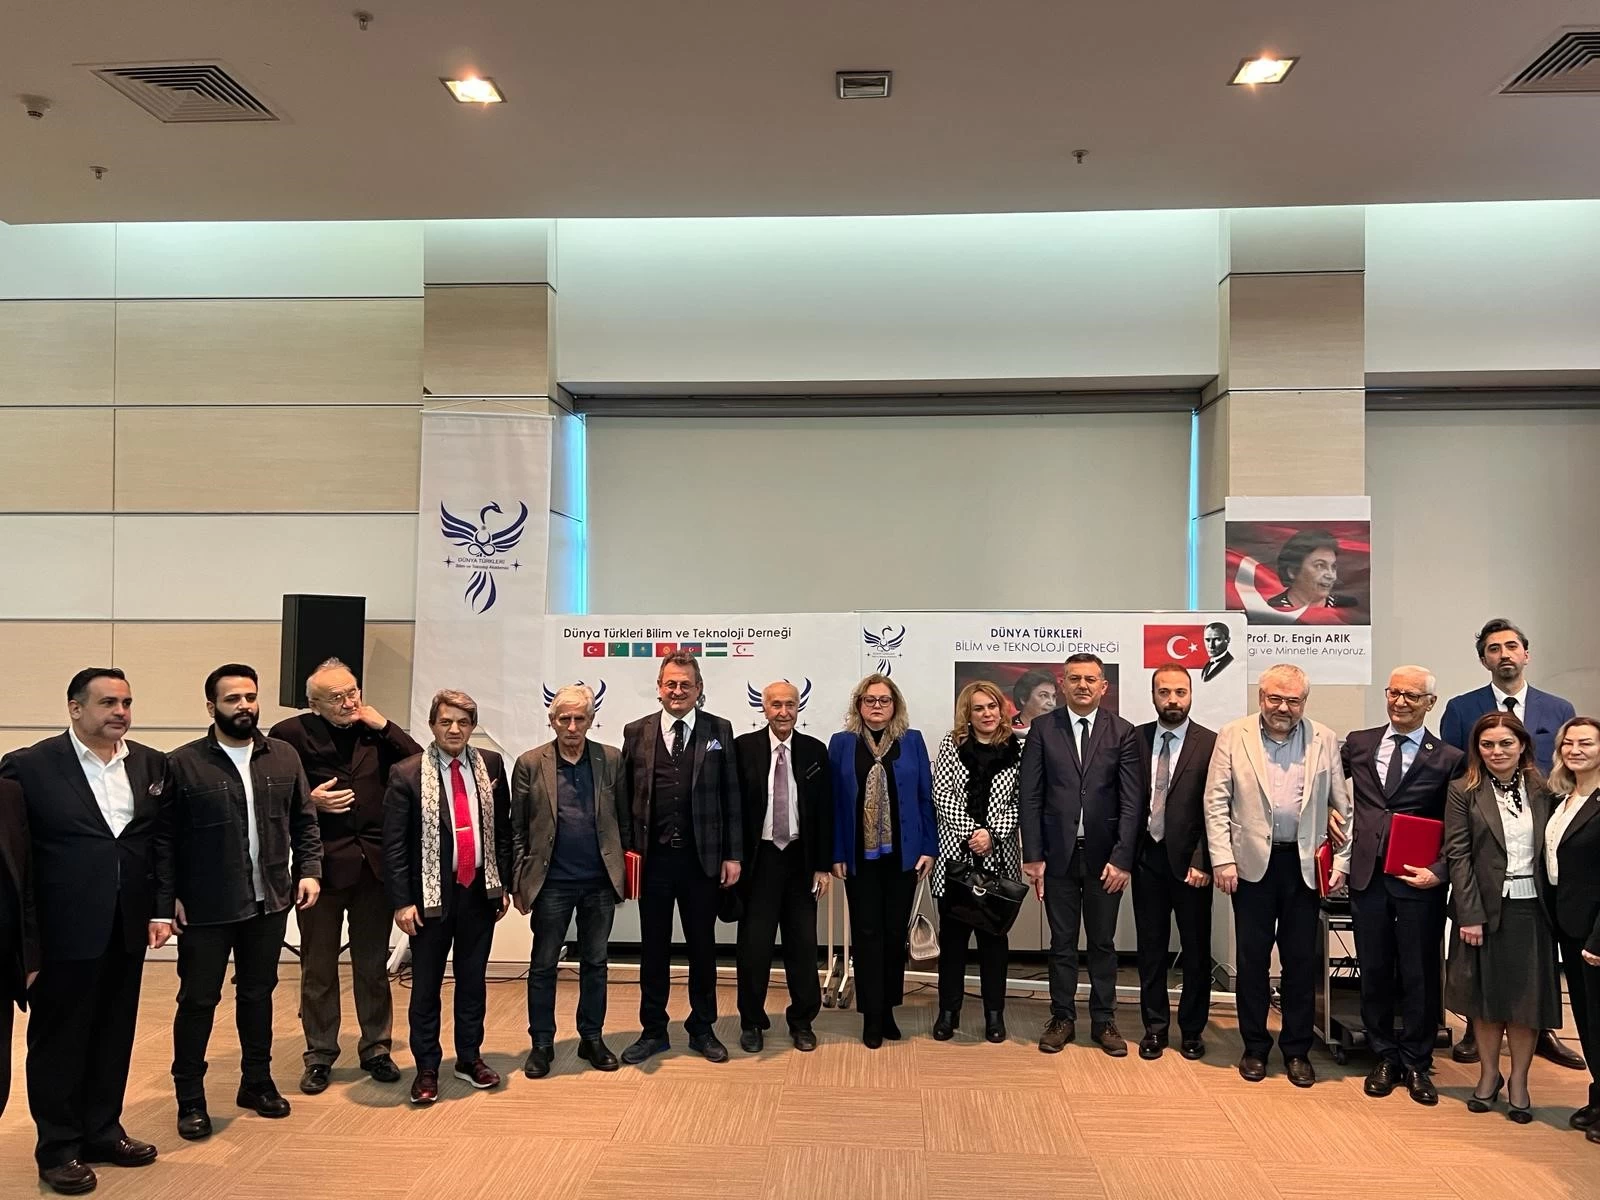 Dünya Türkleri Bilim Teknoloji Akademisi Ankara'da konferans düzenledi!